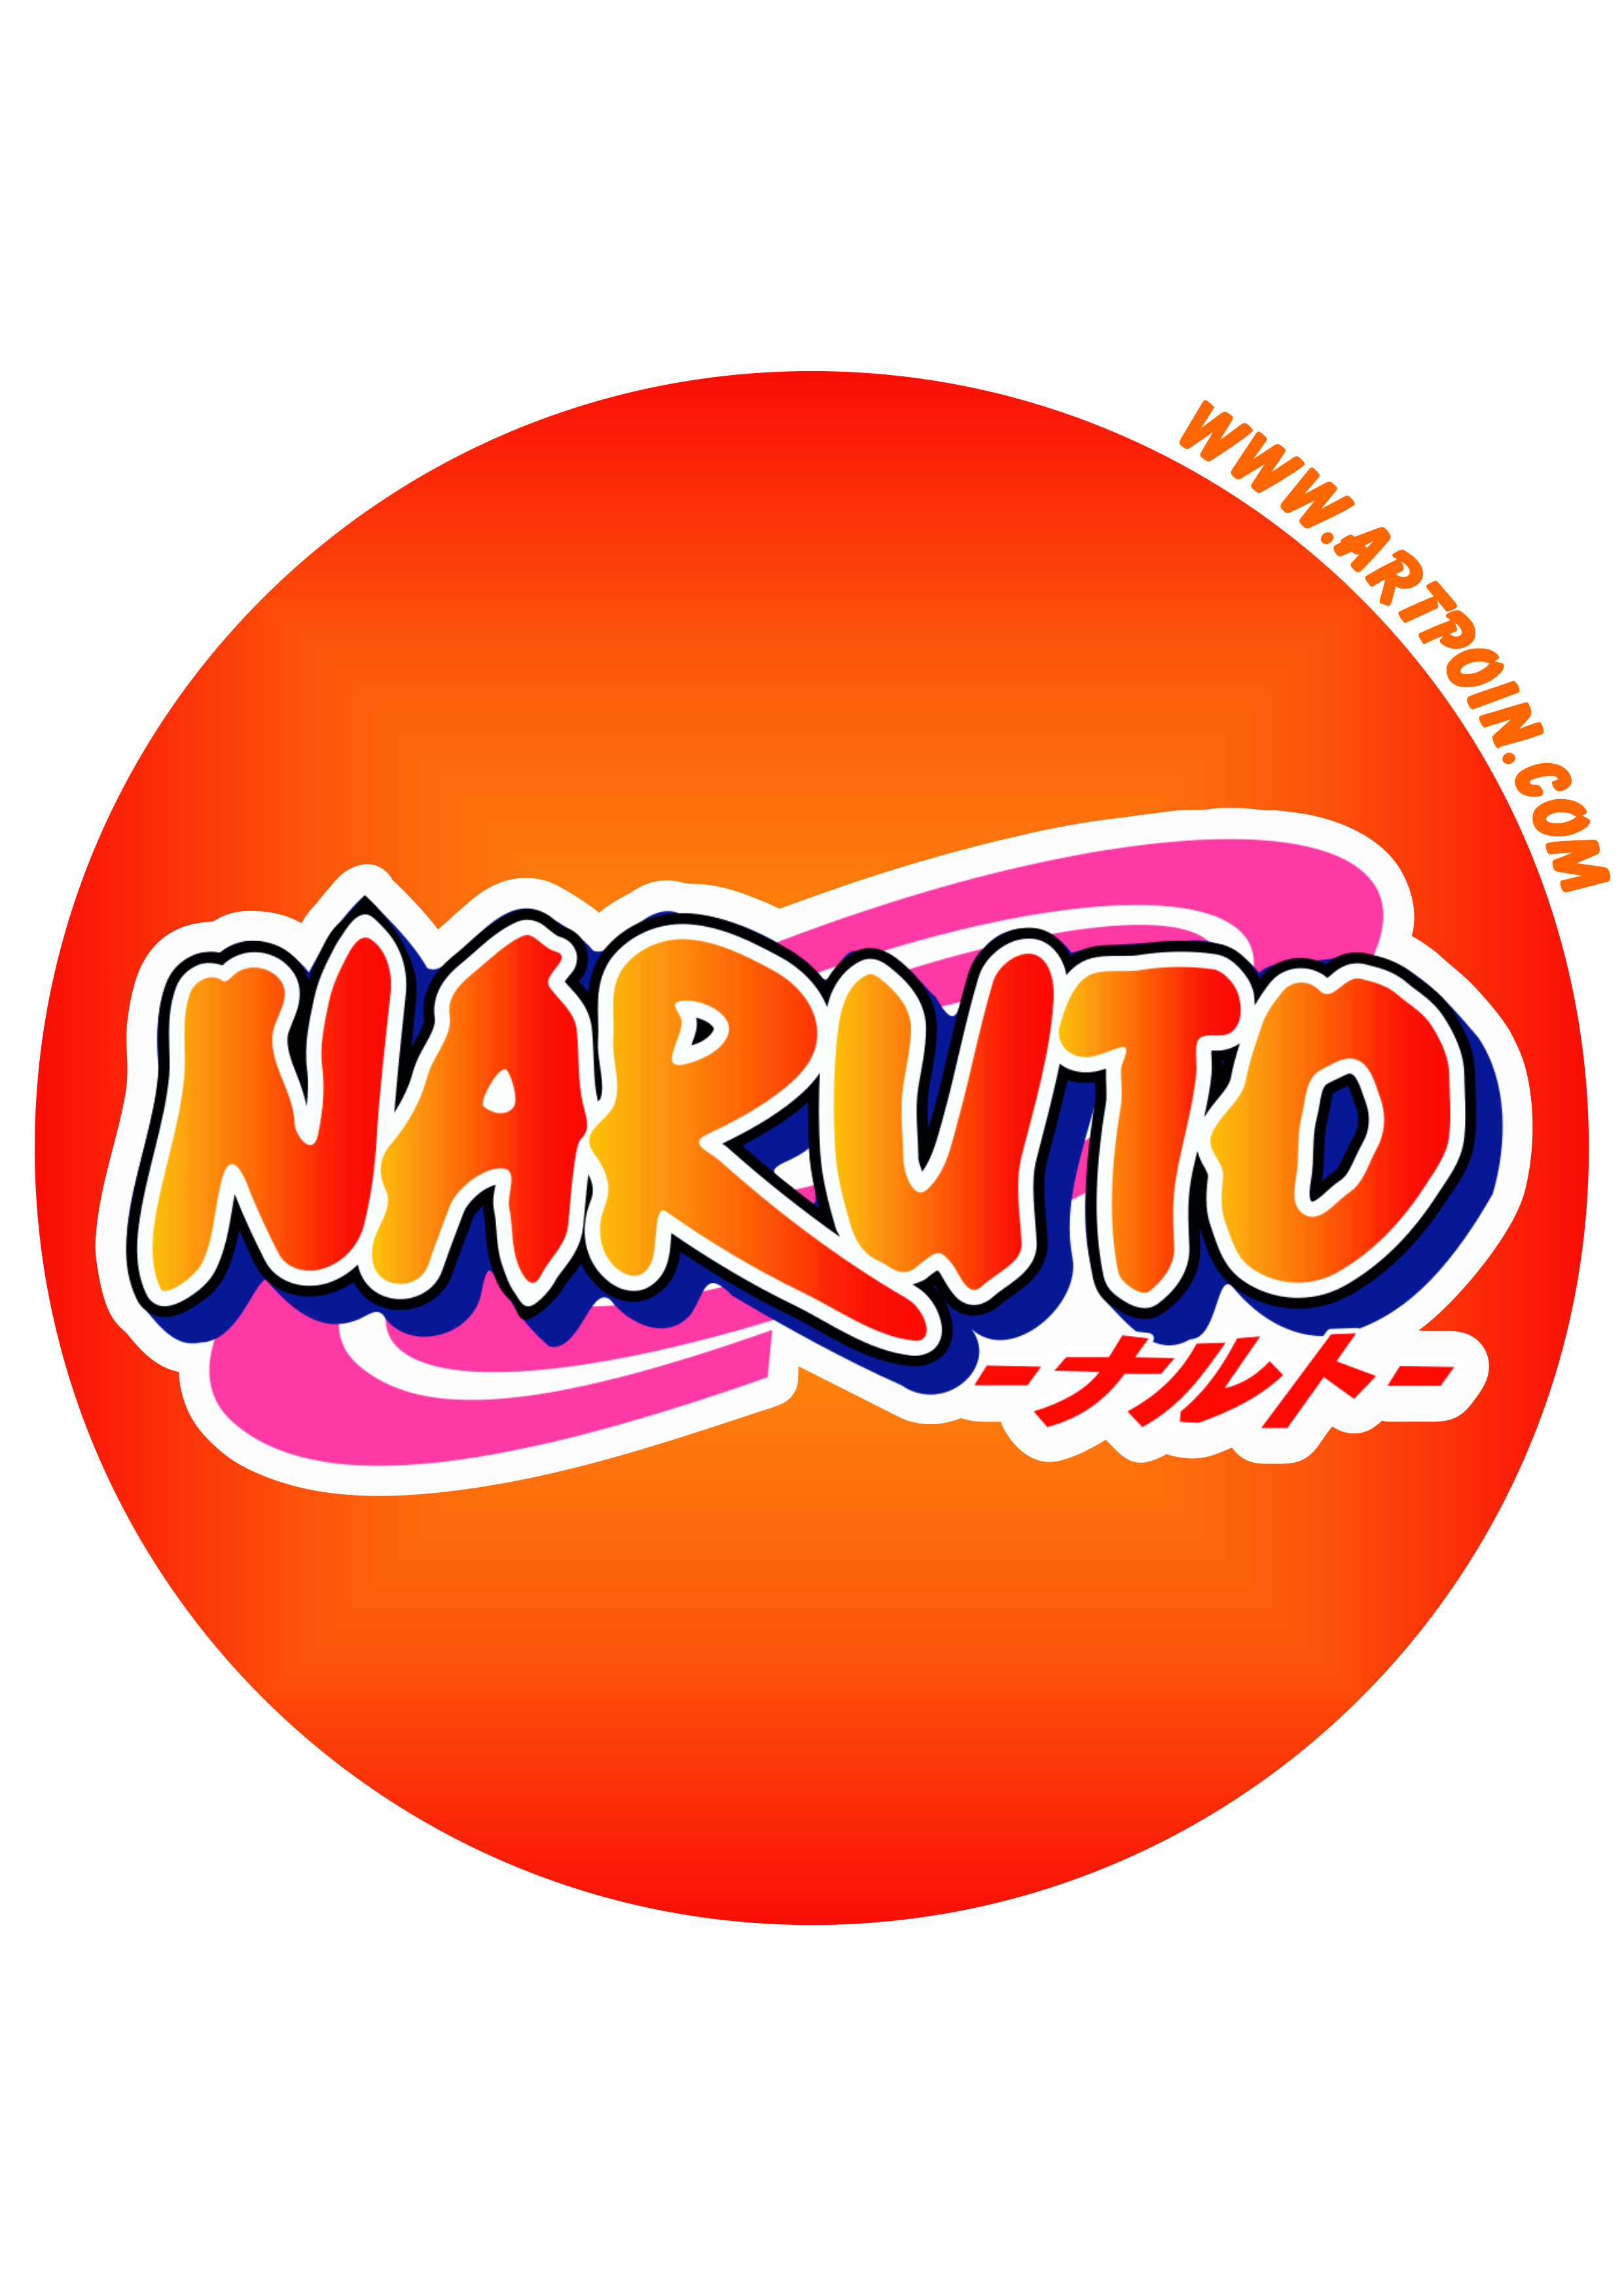 Naruto logomarca decoração de festa adesivo tag sticker painel artes gráficas design imagem fundo transparente png